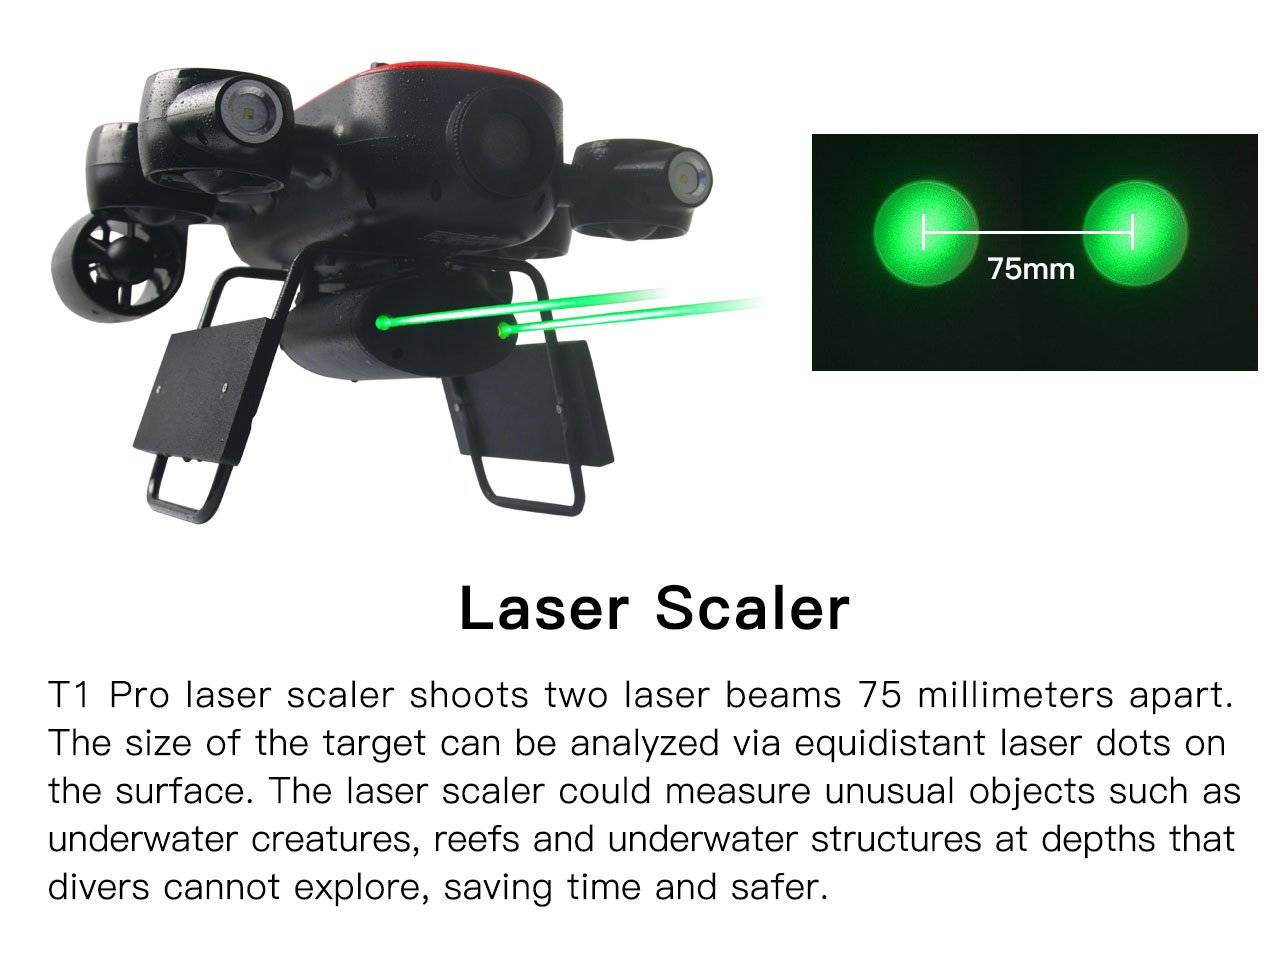 laser-scaler-geneinno-t1-pro-underwater-drone.jpg